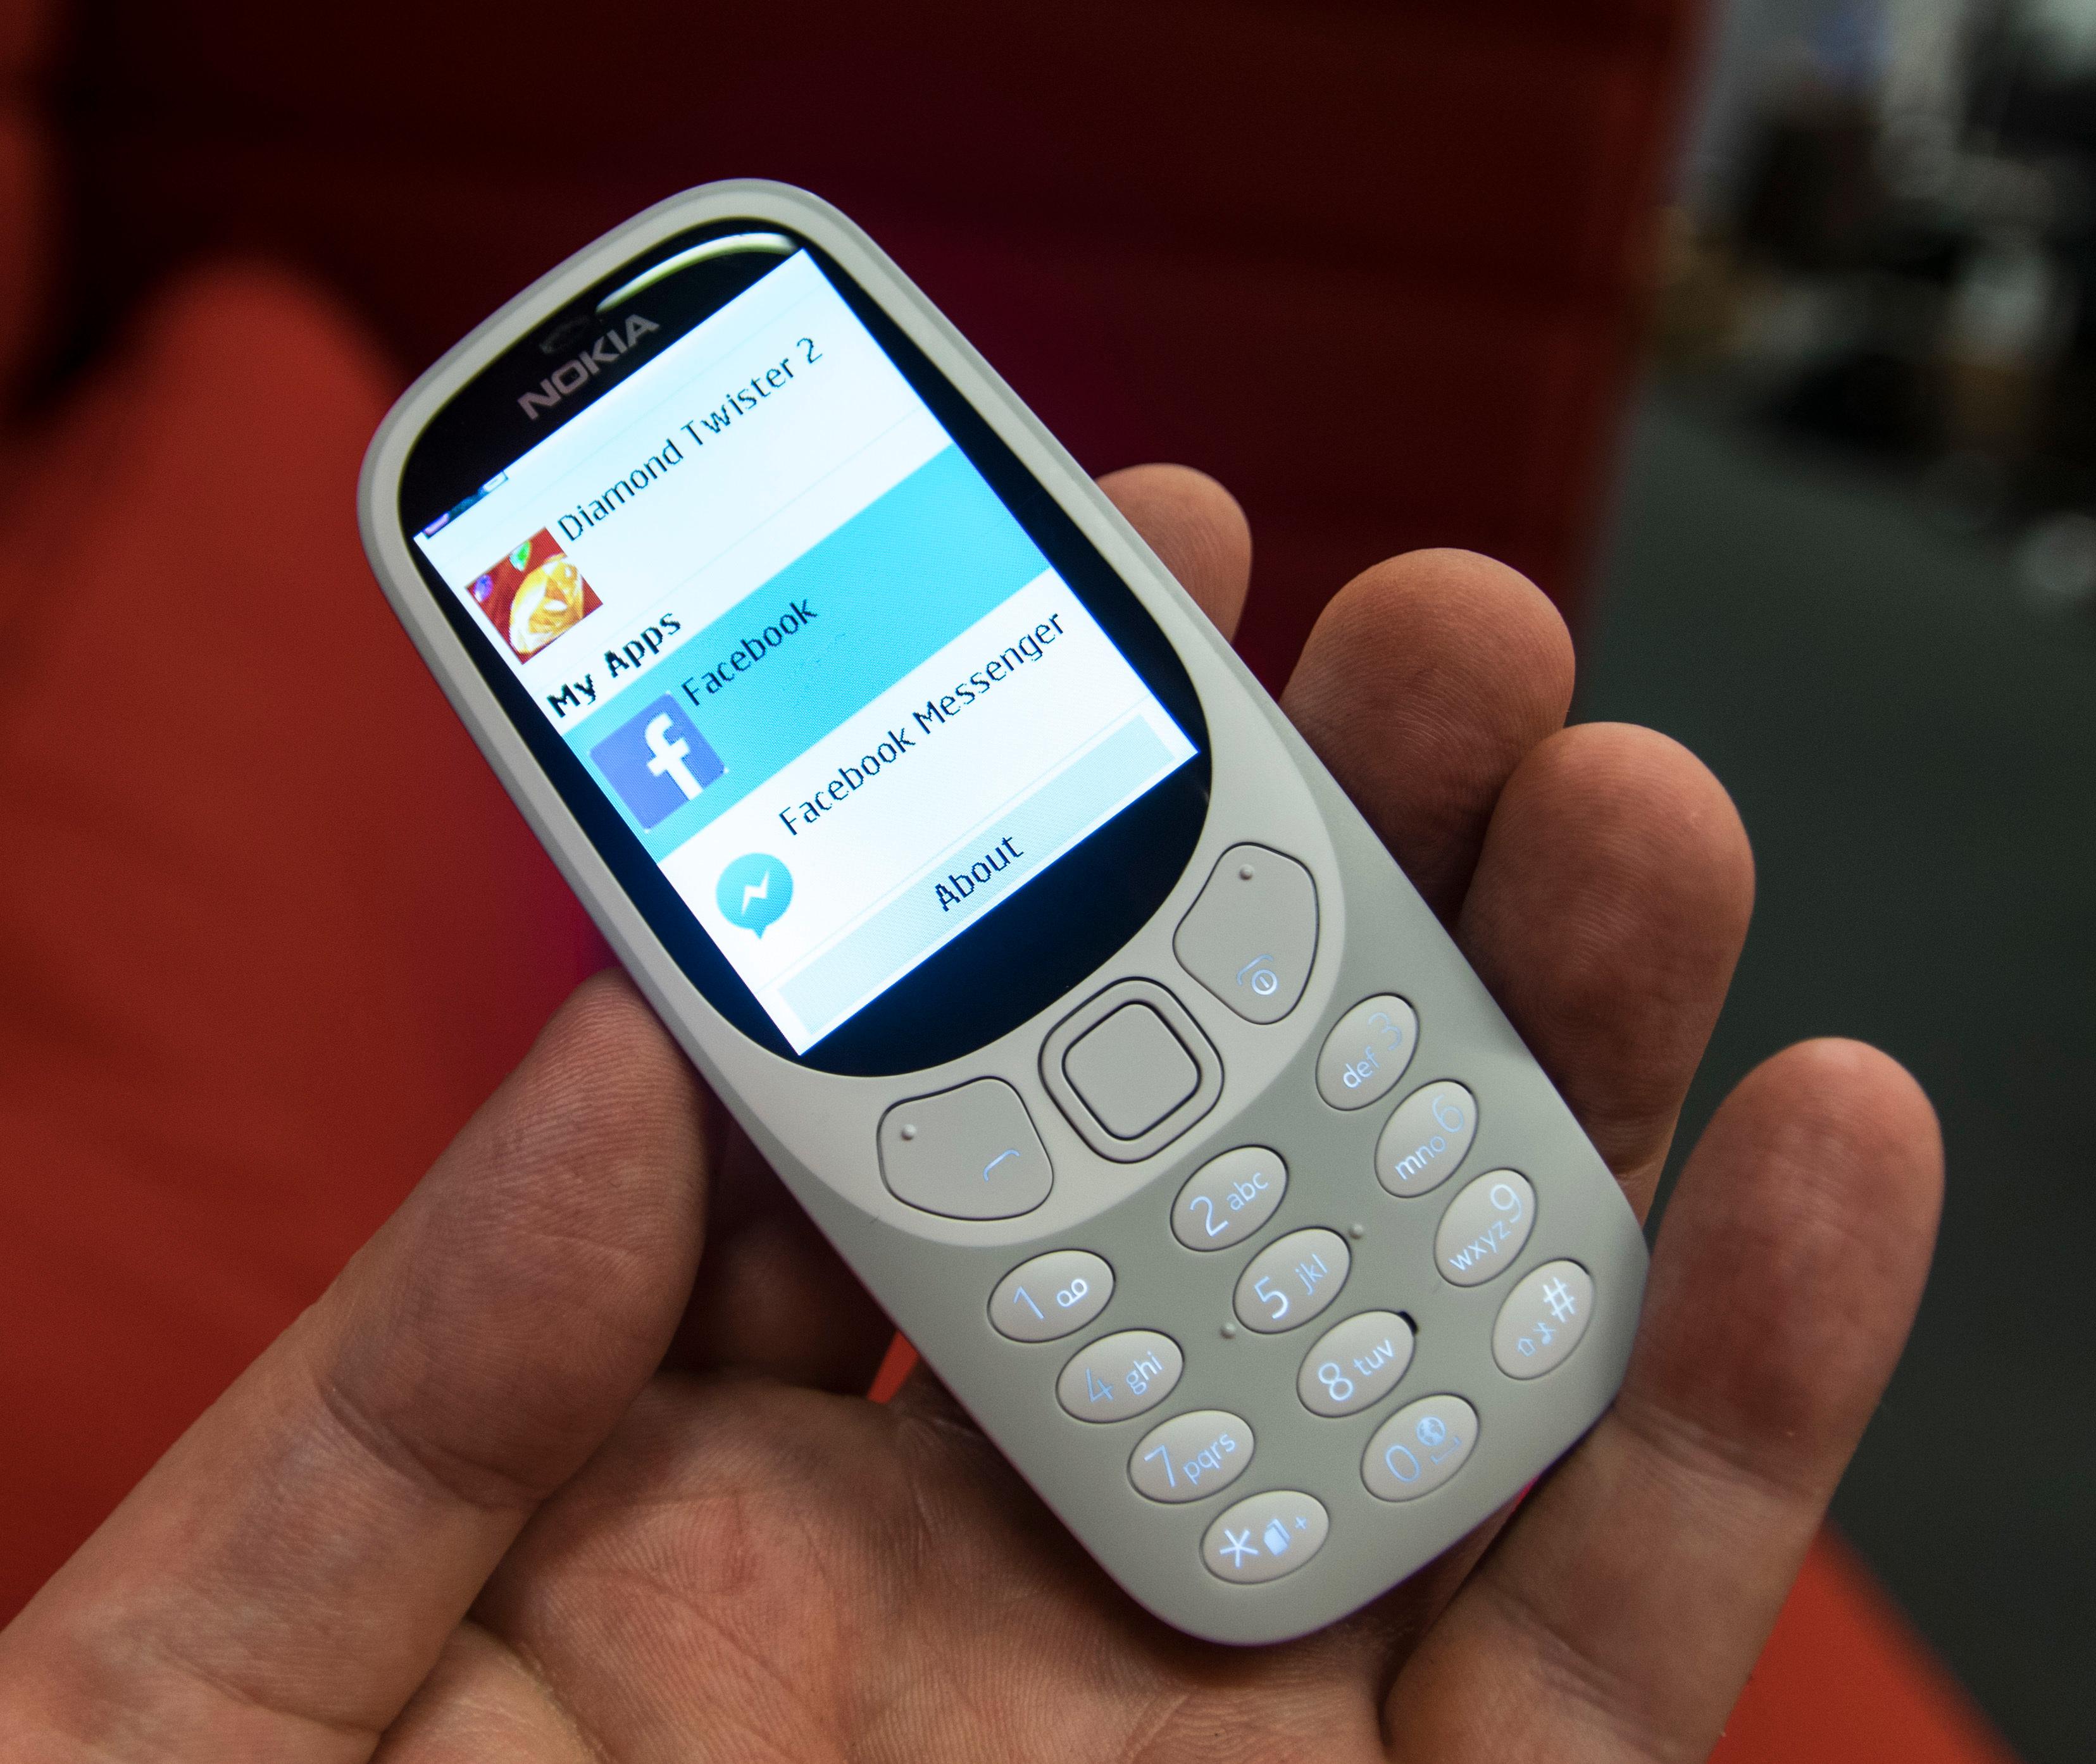 Gamelofts appbutikk skjuler Java-perler du kanskje har hørt om før, men stort sett har rukket å fortrenge. Det nyttigste her; en fullverdig Facebook-klient som faktisk virker, om enn tregt, på Nokia 3310.